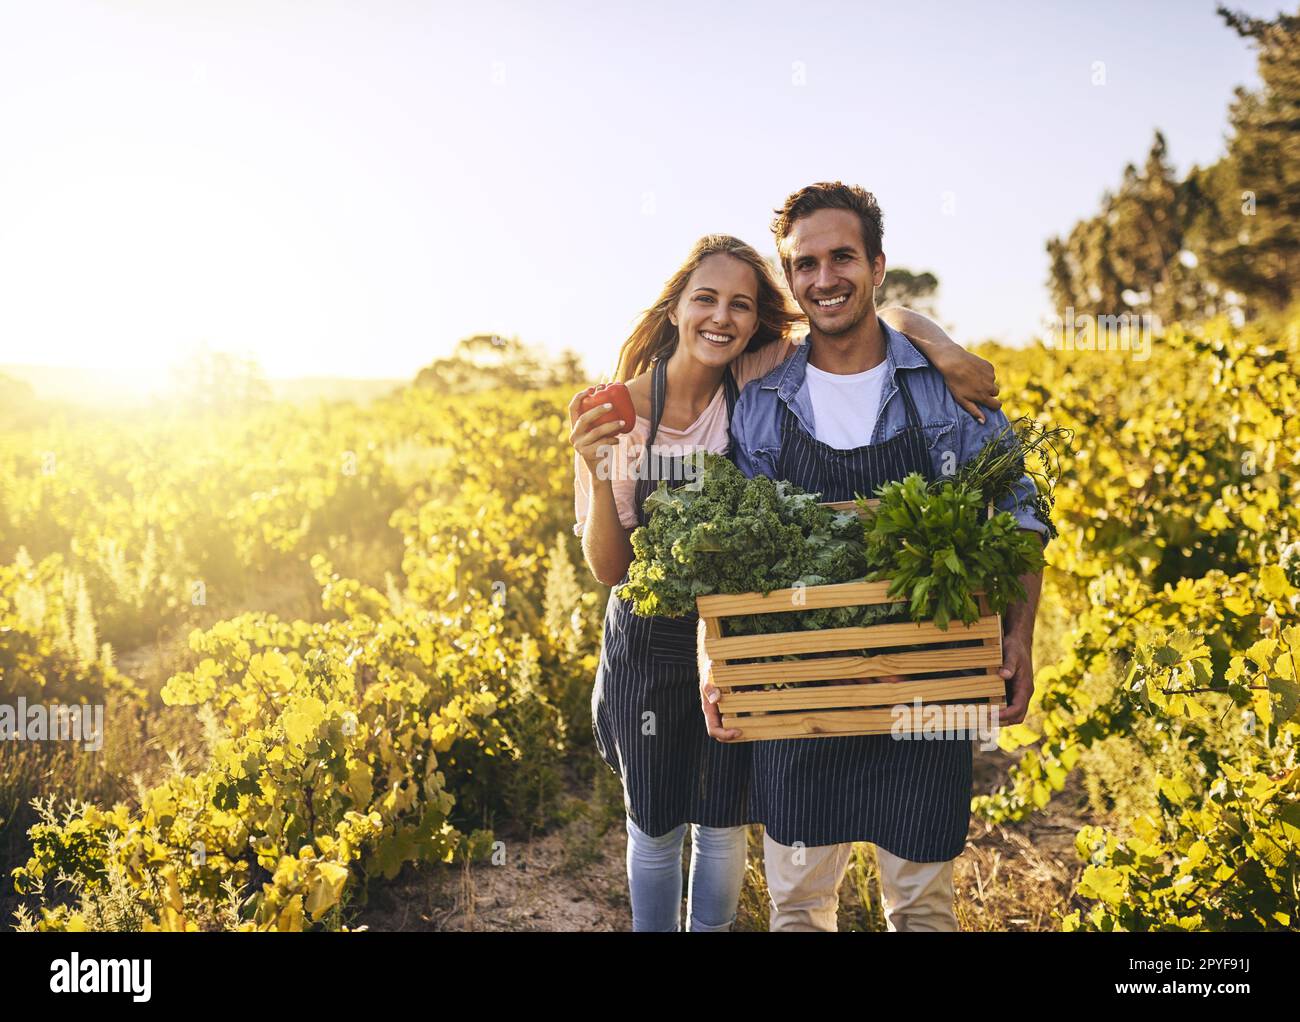 Reif und bereit zum Fressen. Ein junger Mann und eine junge Frau arbeiten zusammen auf einem Bauernhof. Stockfoto